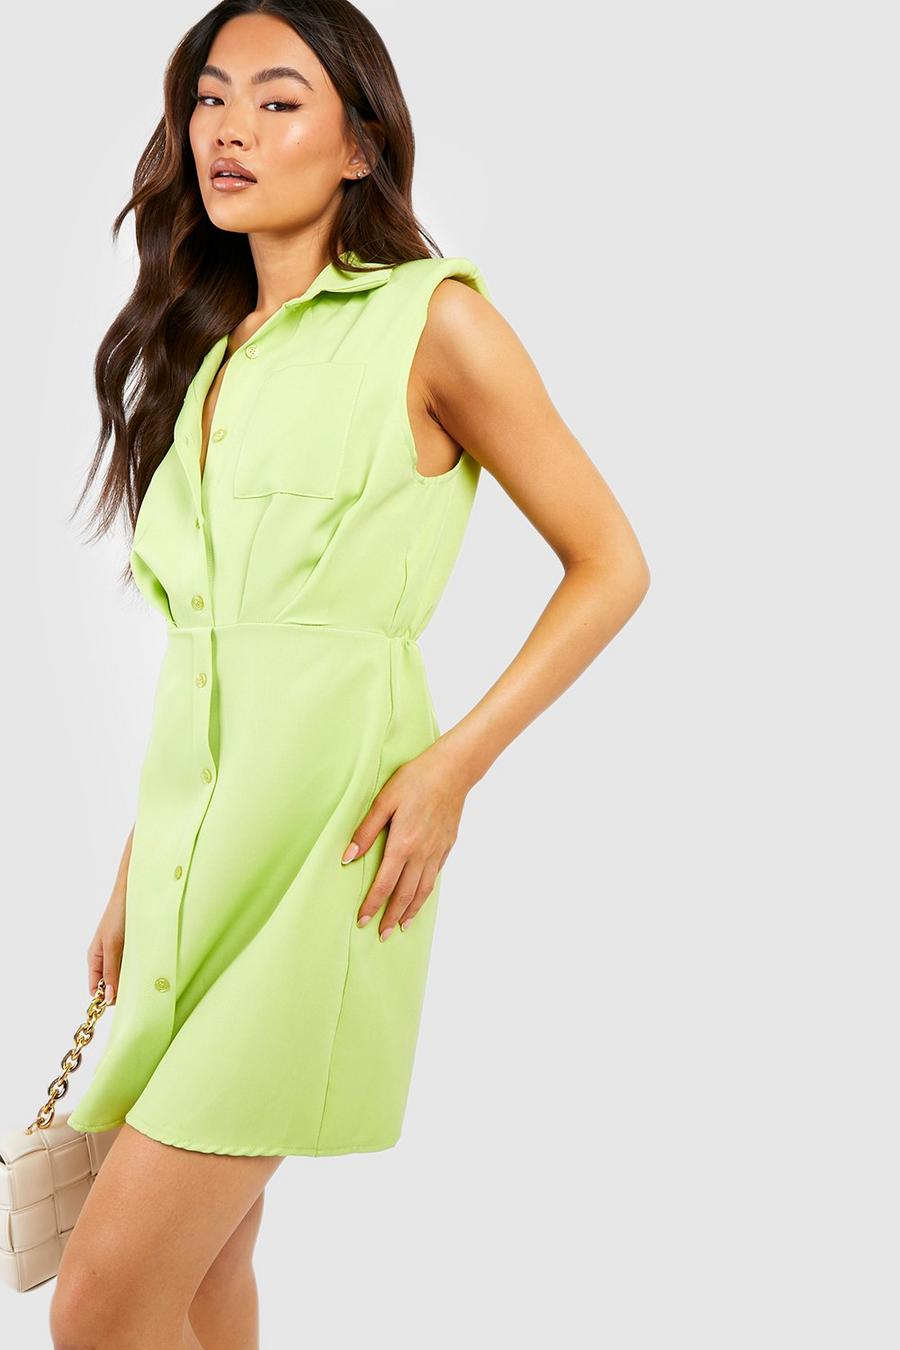 Soft lime Shoulder Pad Pocket Detail Tailored Shirt Dress